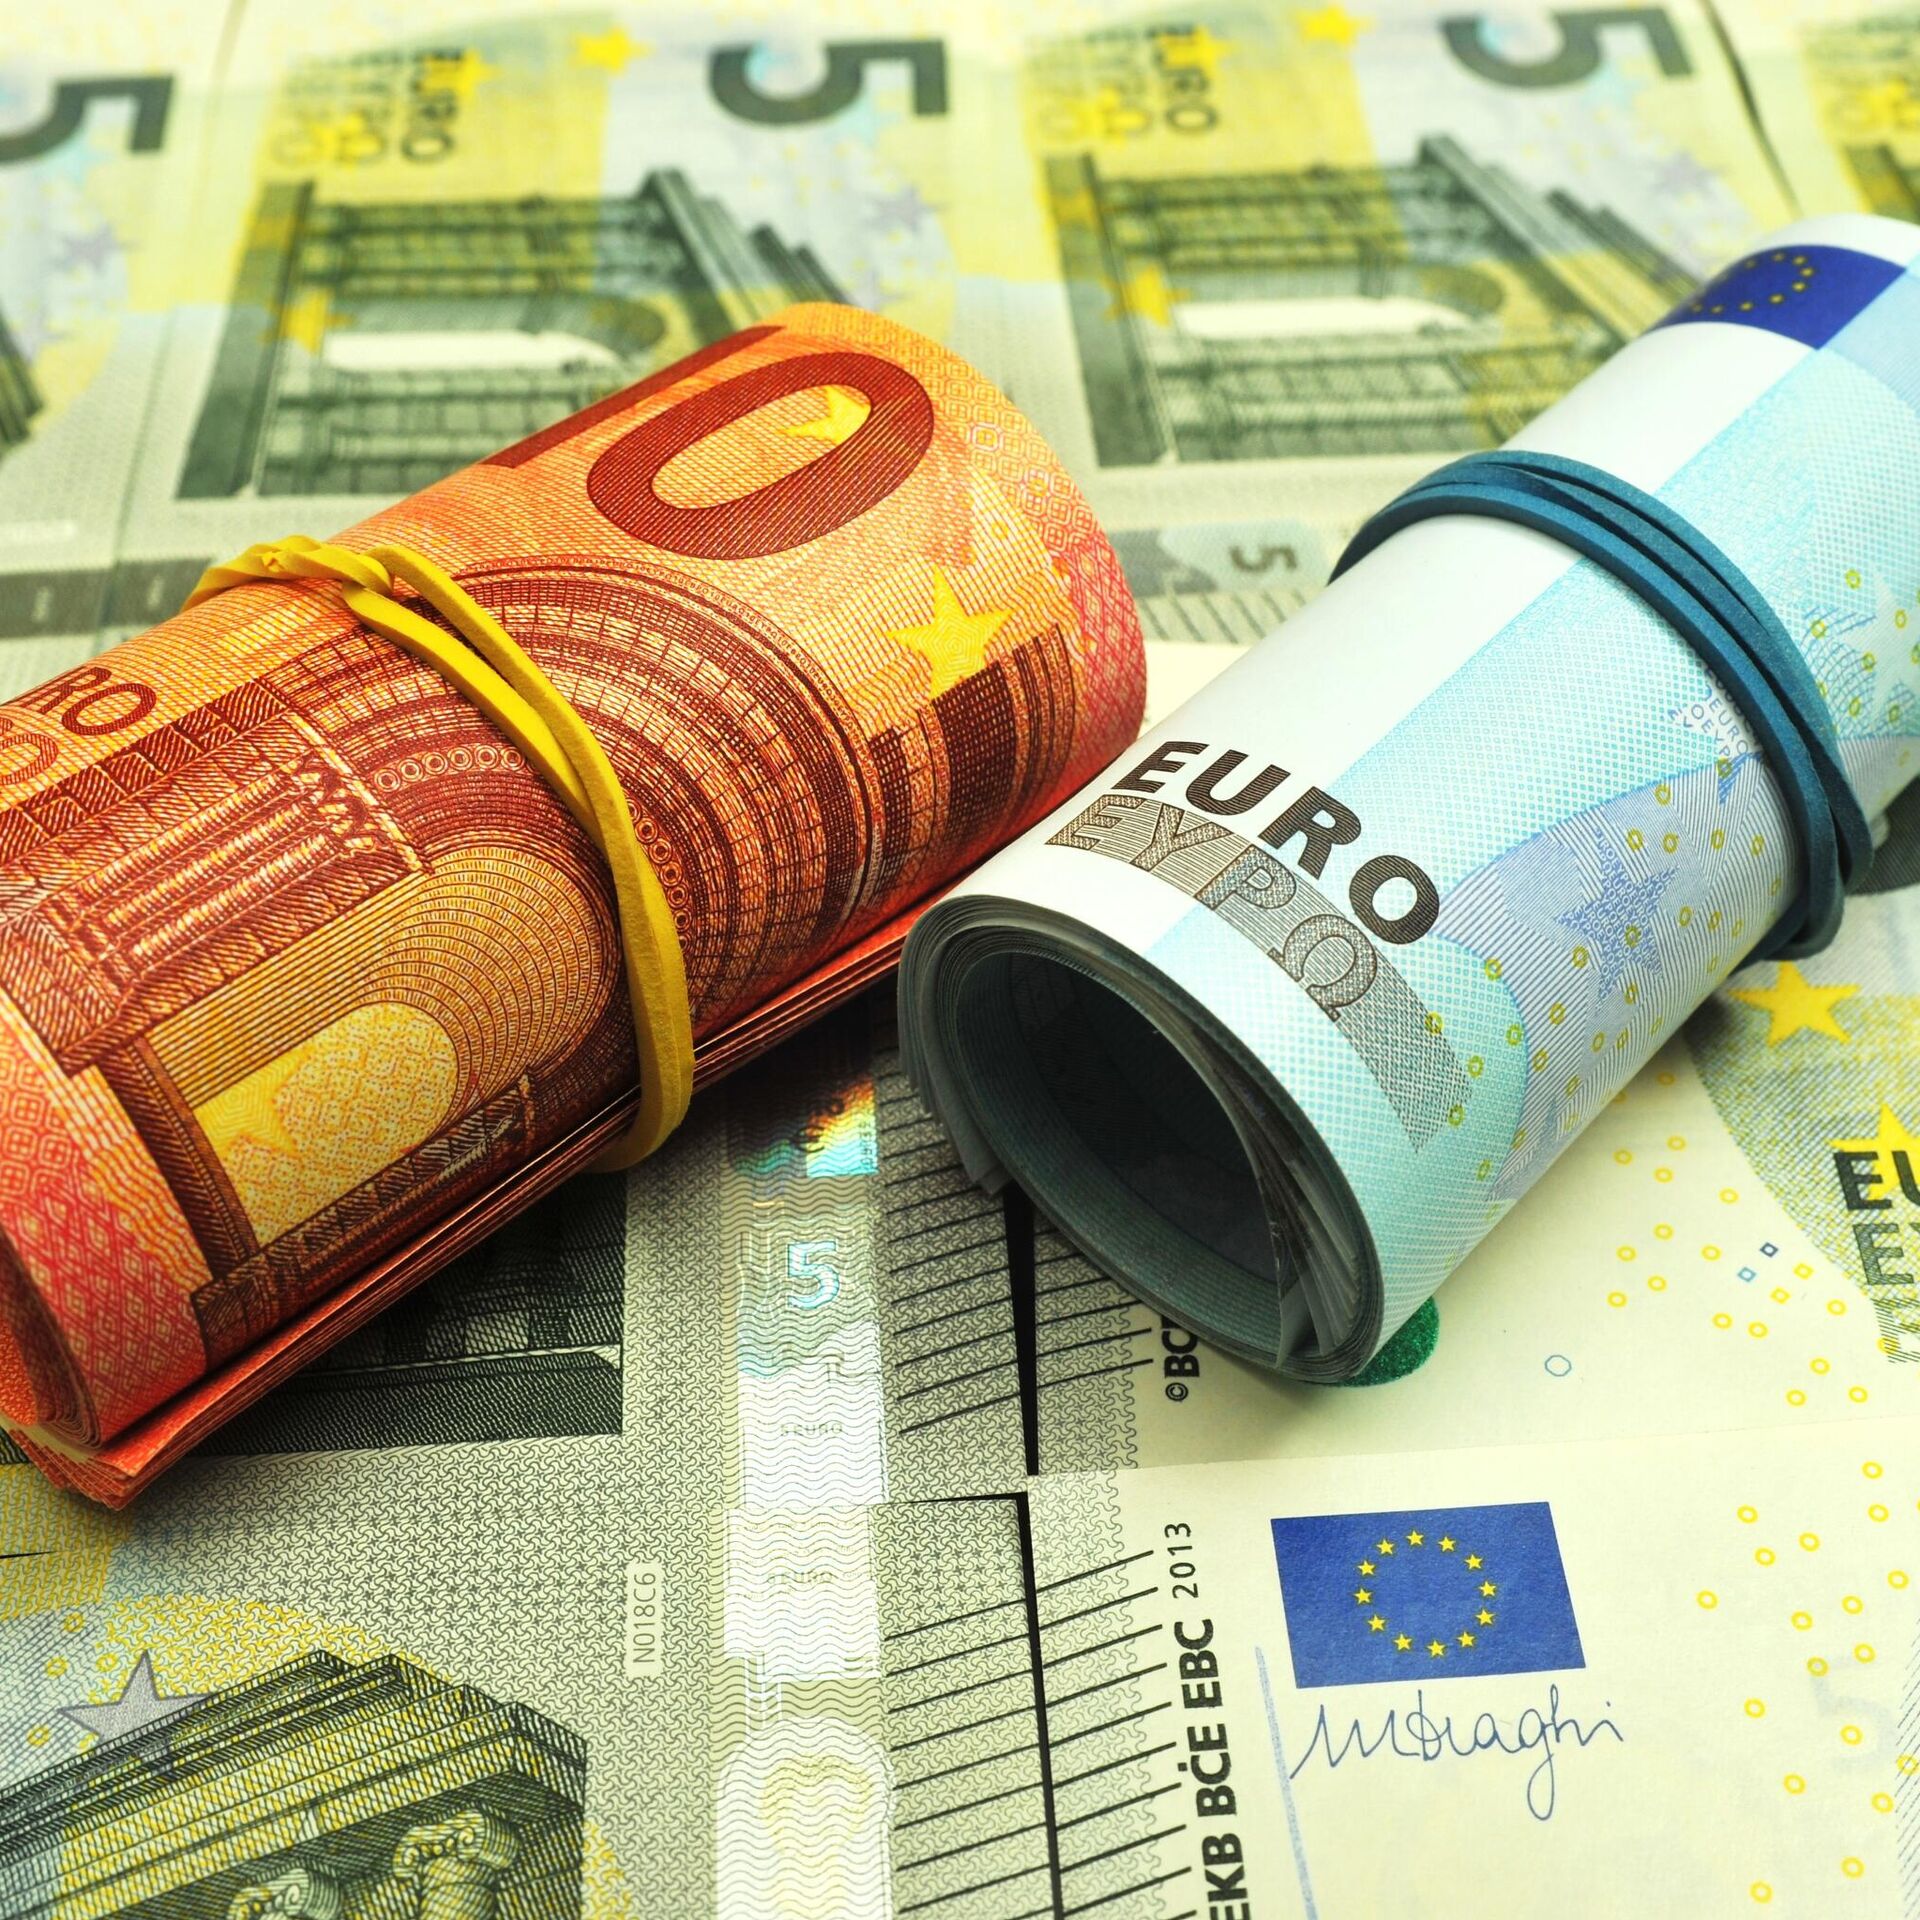 Евро в банках Курска. Чирпон цена на евро. Купить выгодно евро в петербурге